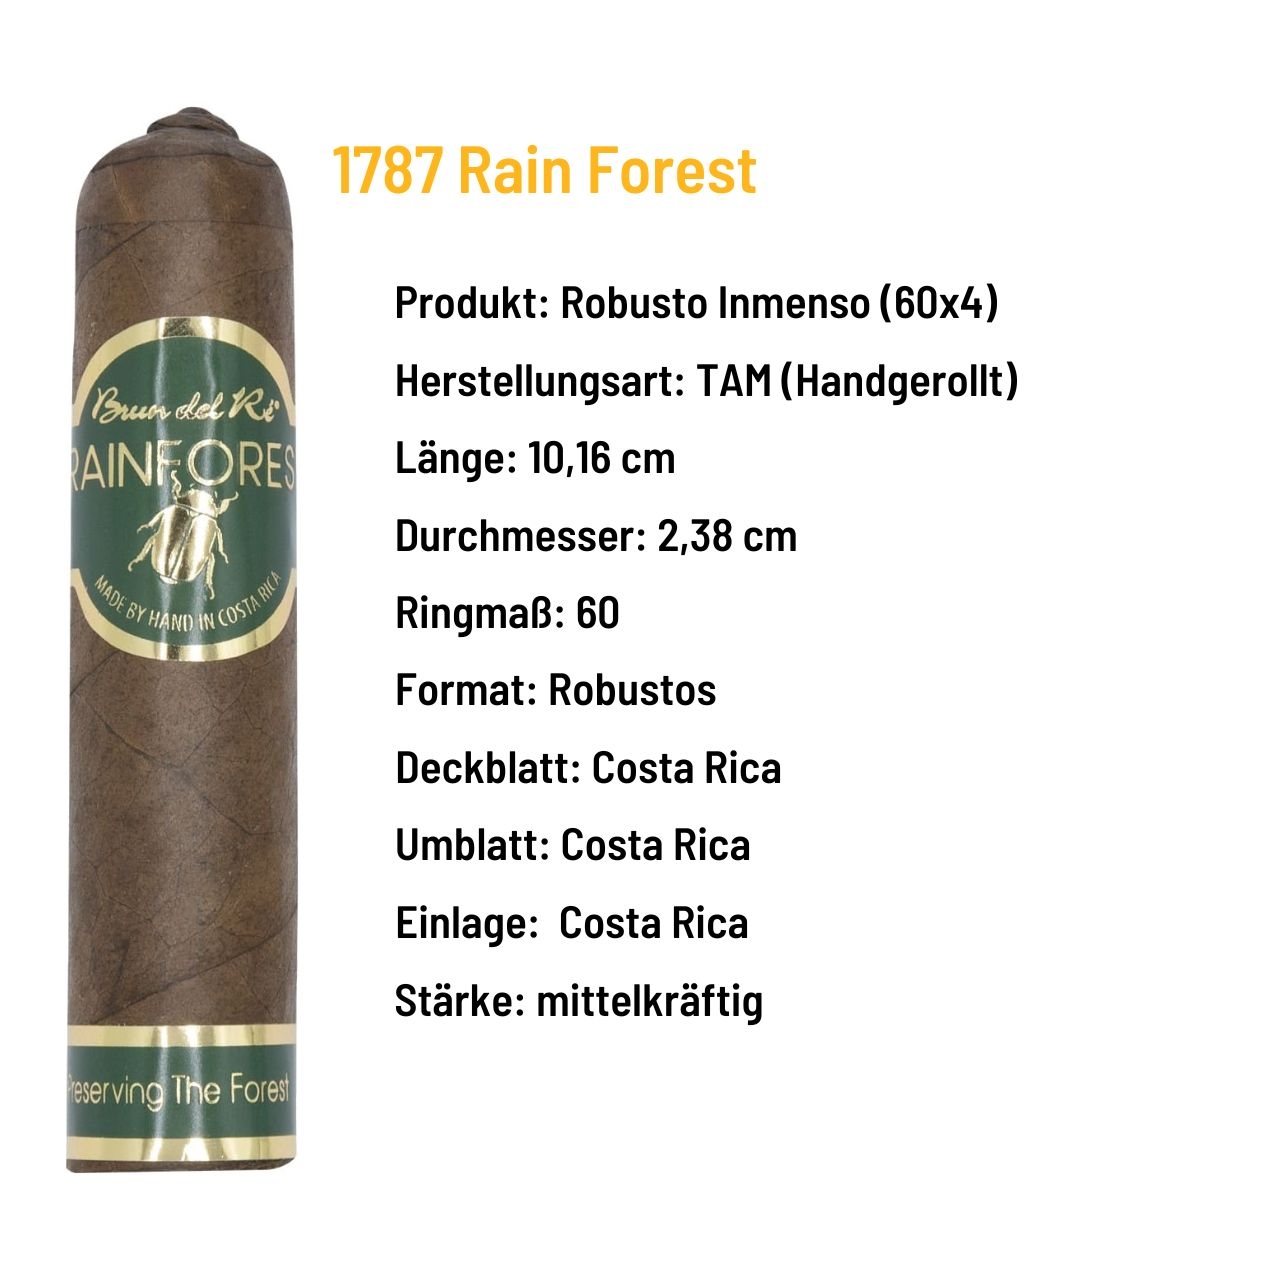 Brun del Ré - Rain Forest Robusto Inmenso - Costa Rica